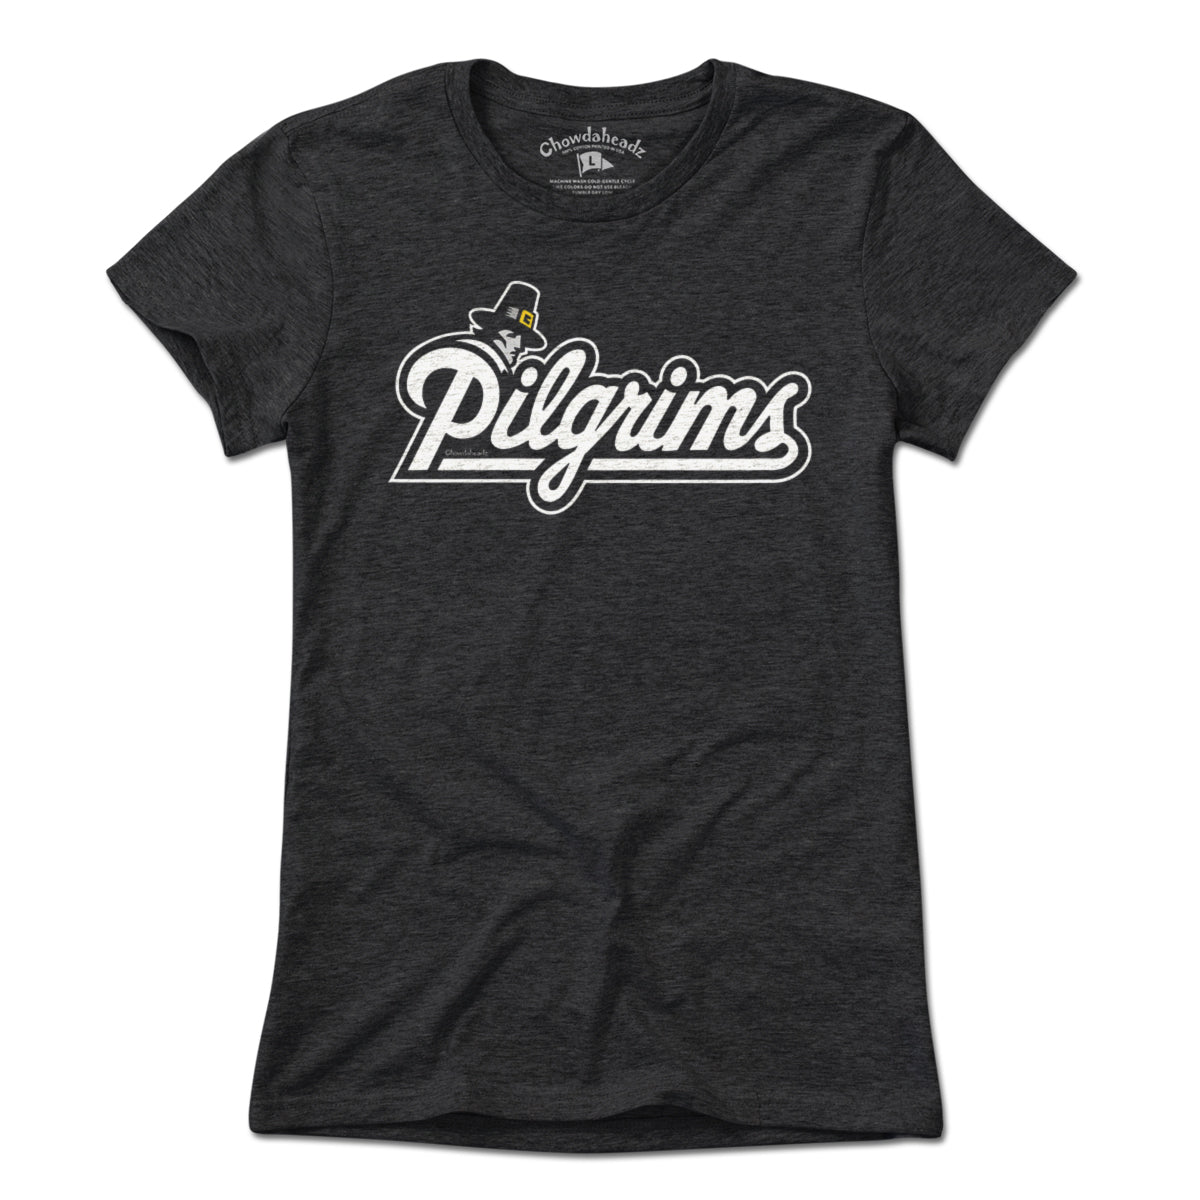 Pilgrims Logo T-Shirt - Chowdaheadz